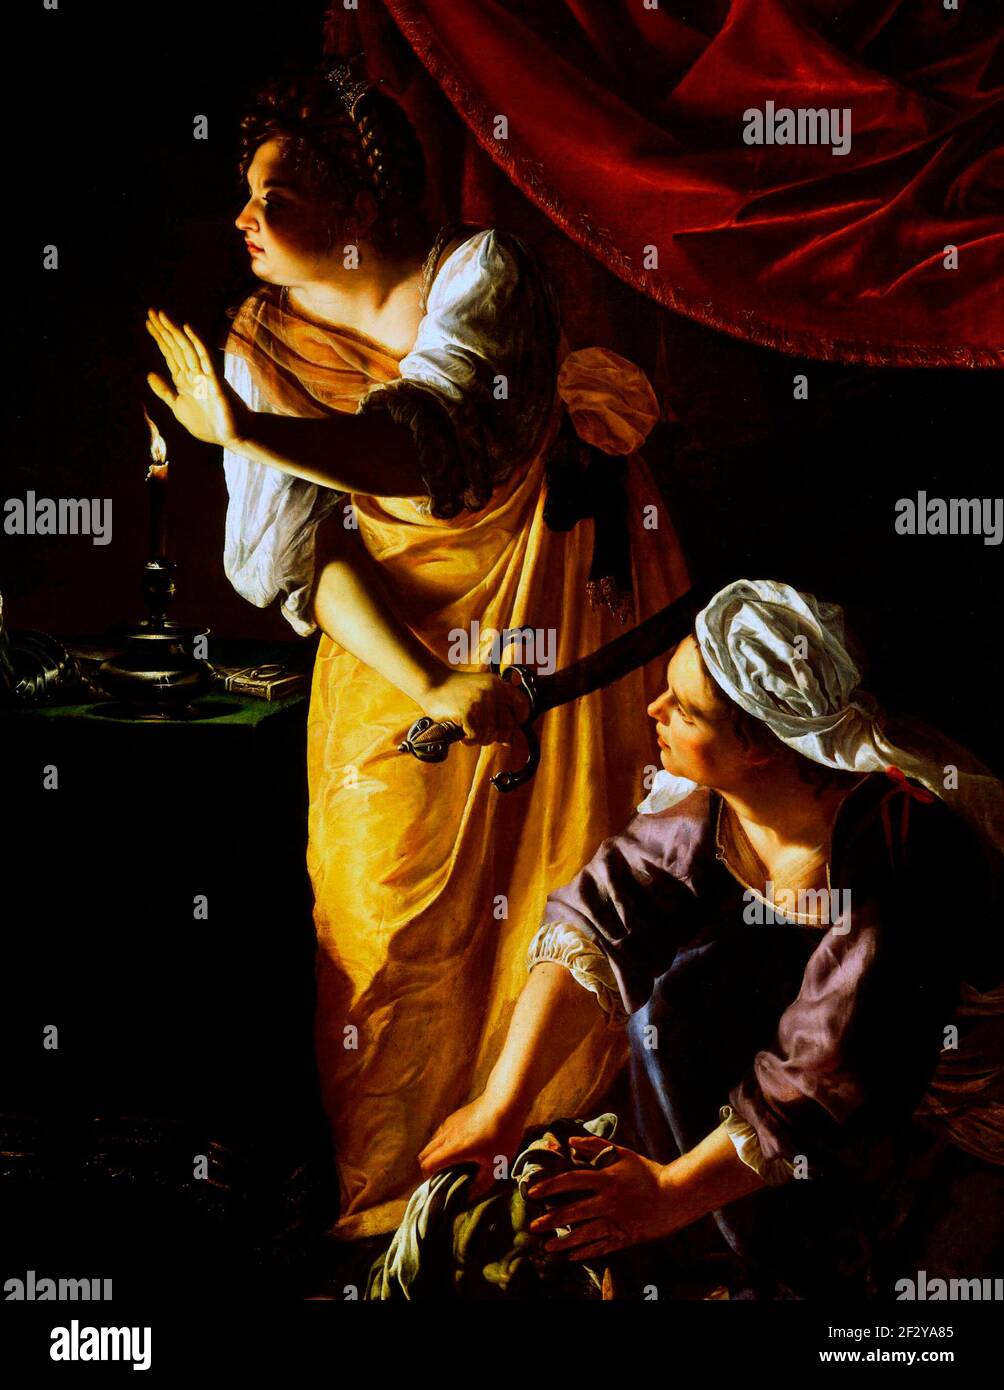 Judith et son serviteur - Judith et son serviteur font une pause, semblant d'entendre un bruit à l'extérieur de la tente d'Holofernes. L'intérieur sombre est illuminé par une seule bougie. La main de Judith protège son visage de la lueur, attirant l'attention sur le gant de fer jeté par Holofernes. L’œil du spectateur se déplace vers l’objet dans les mains du serviteur : la tête coupée de Holofernes - Artemisia Gentileschi, vers 1625 Banque D'Images